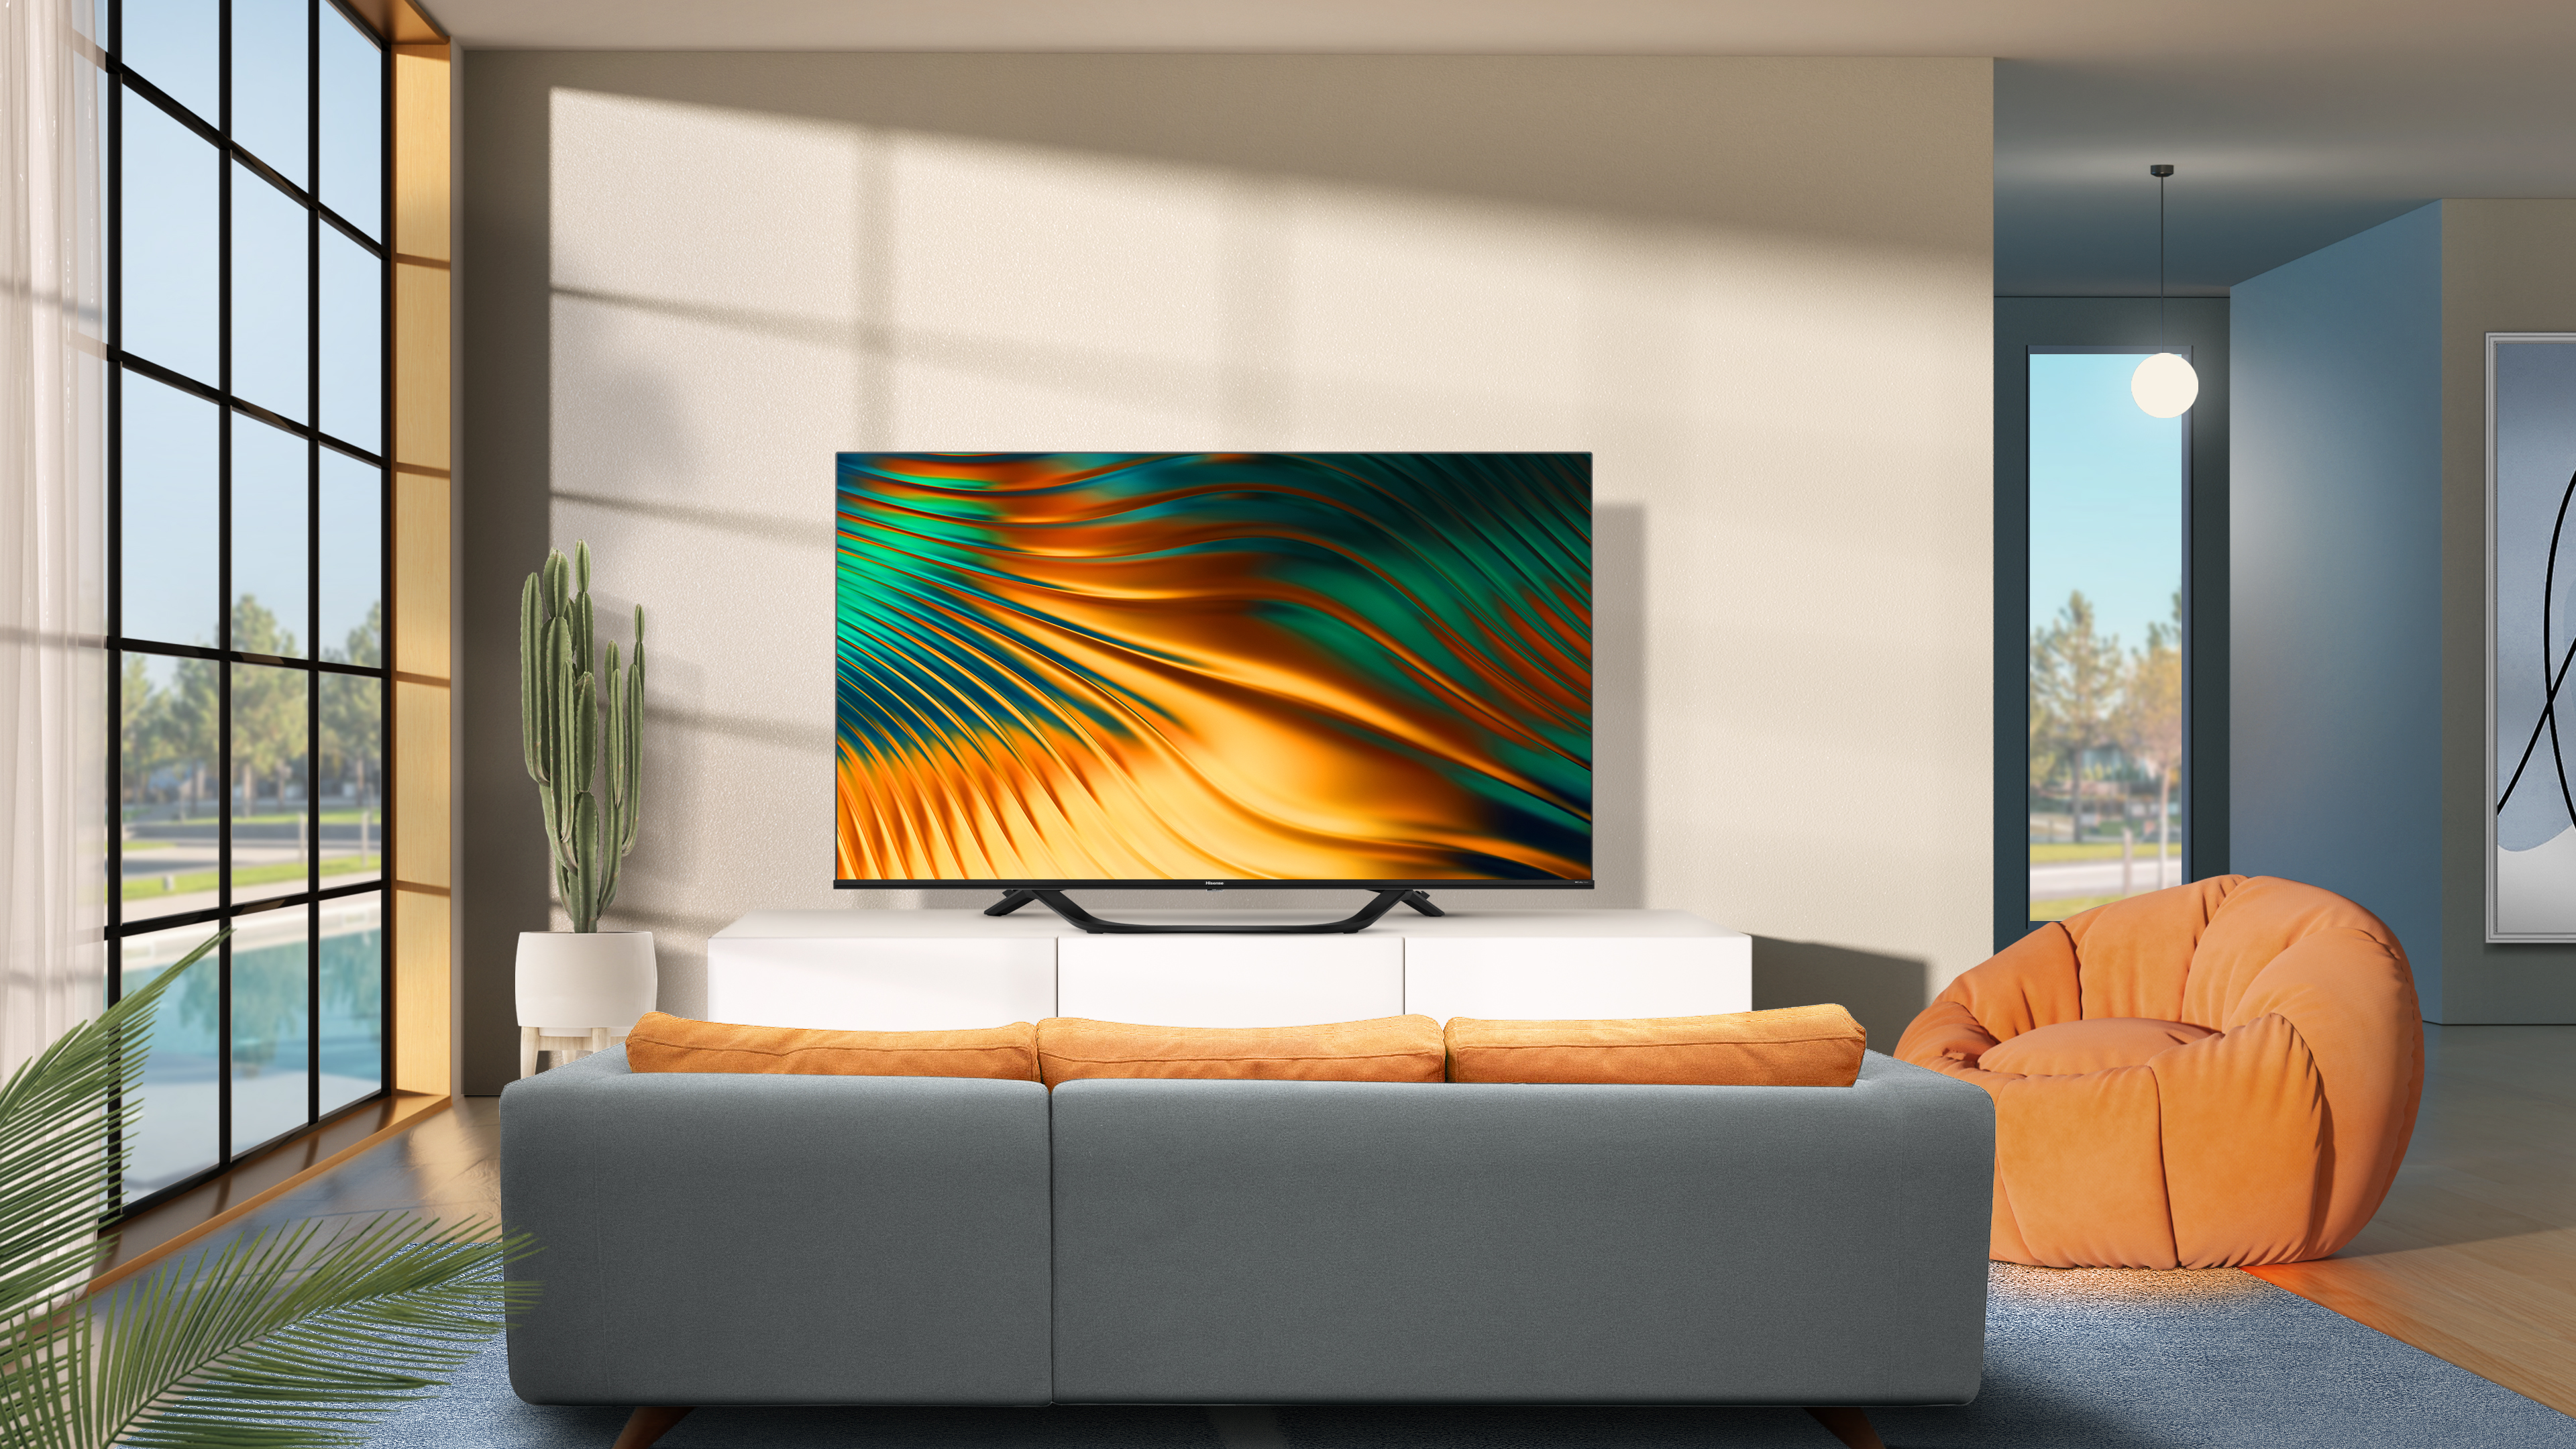 Hisense presenta su nueva gama de televisores